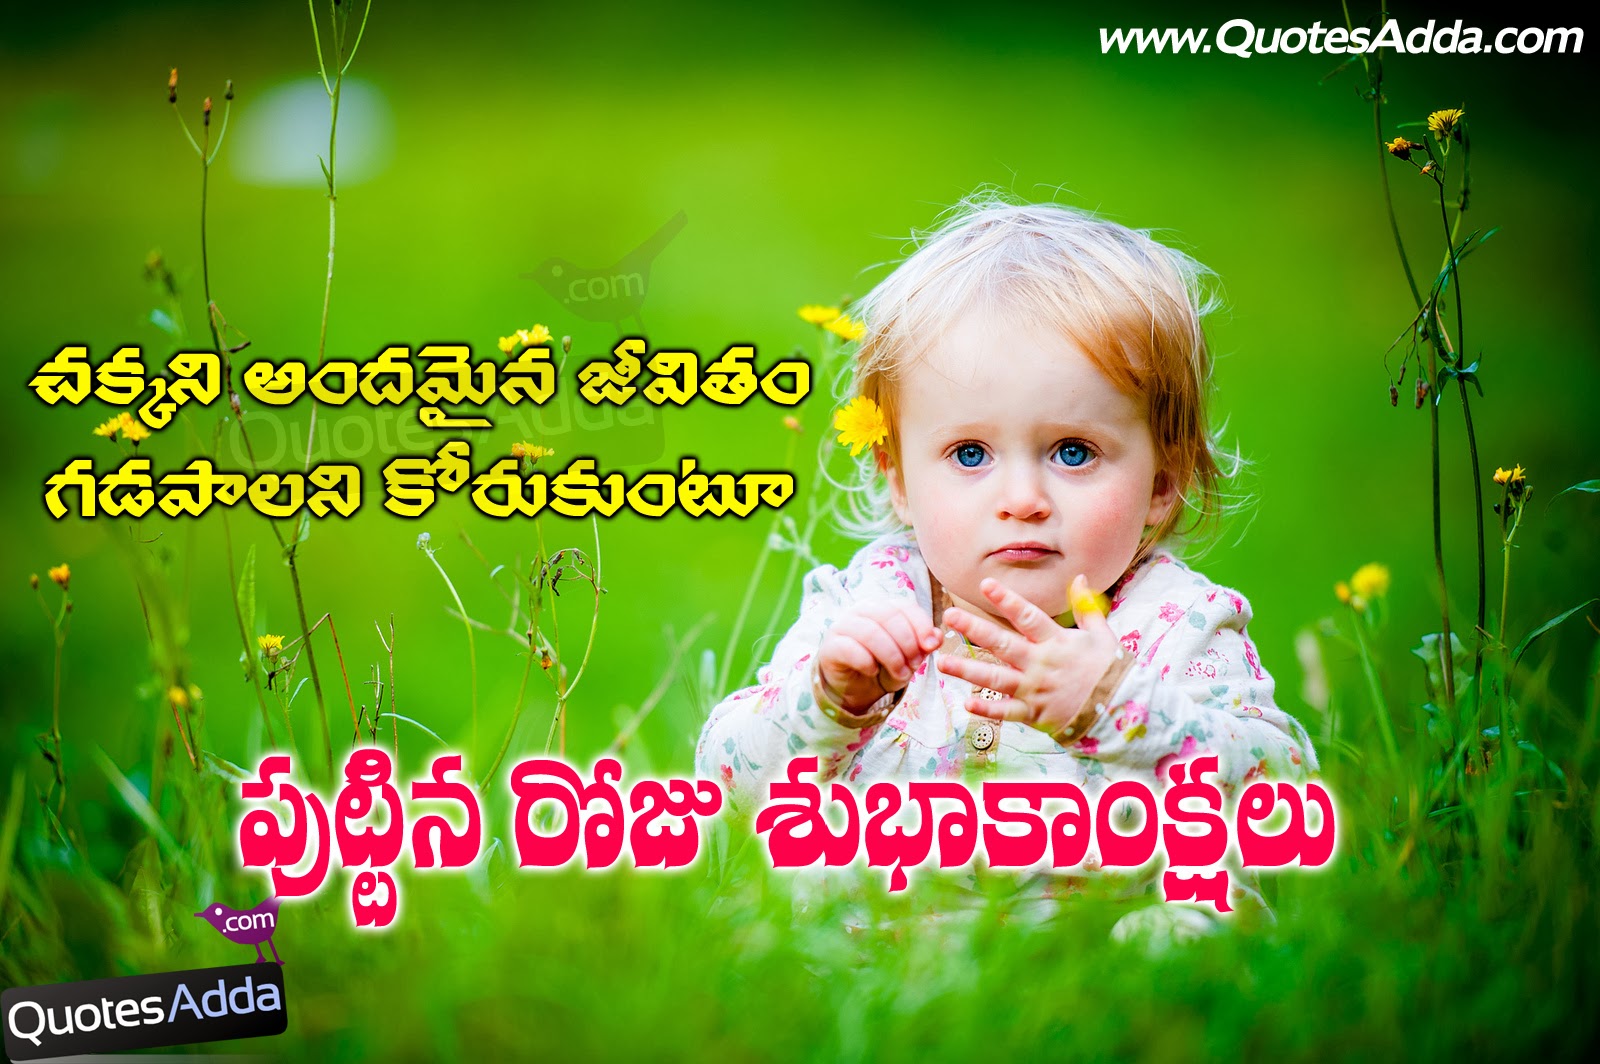 Birthday wishes in Telugu | Telugu Birthday Quotes - 05 | Quotes Adda ...